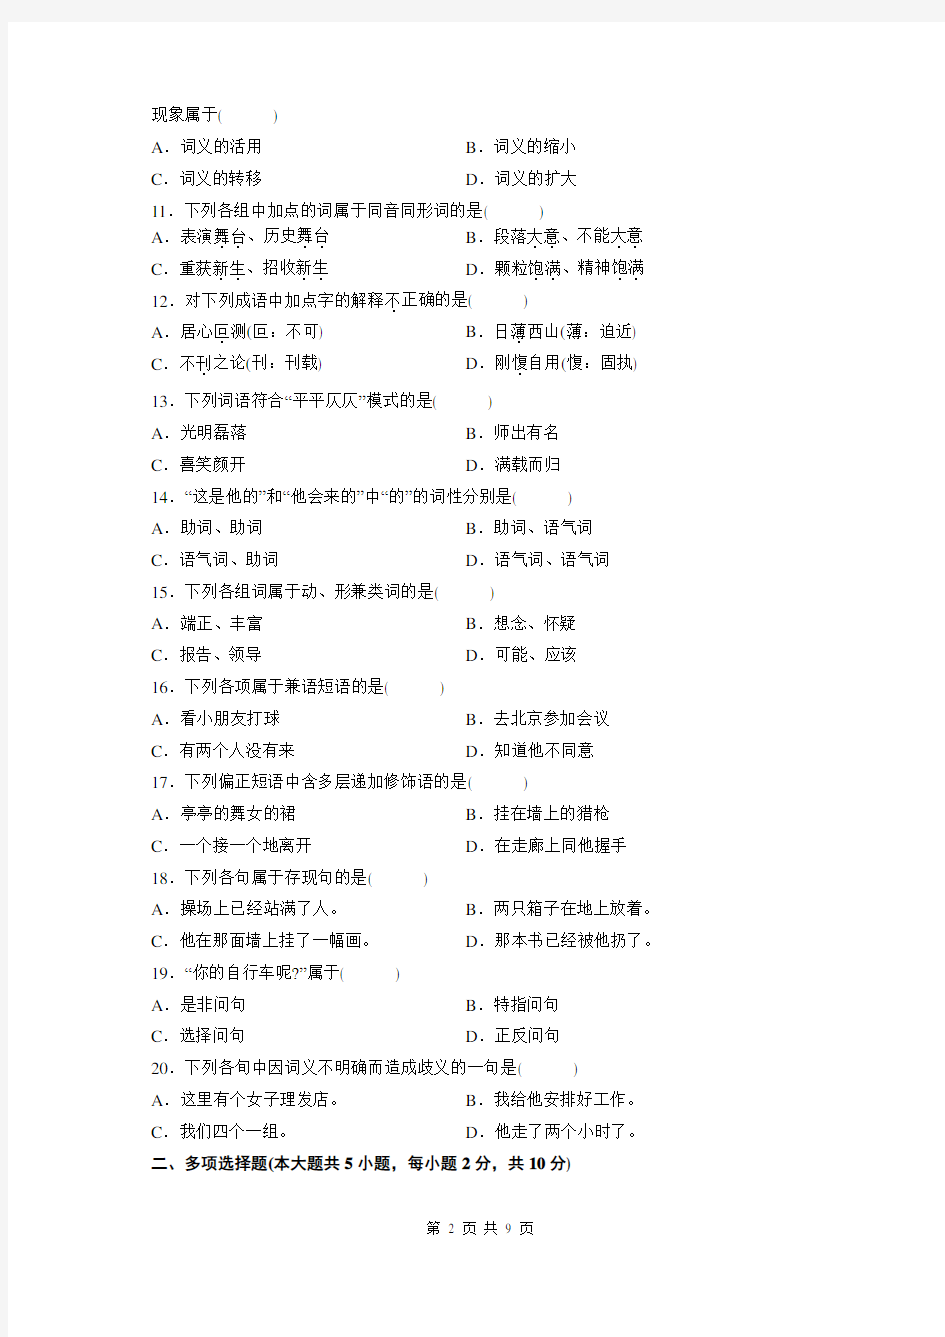 现代汉语-自学考试真题及解析2012年4月